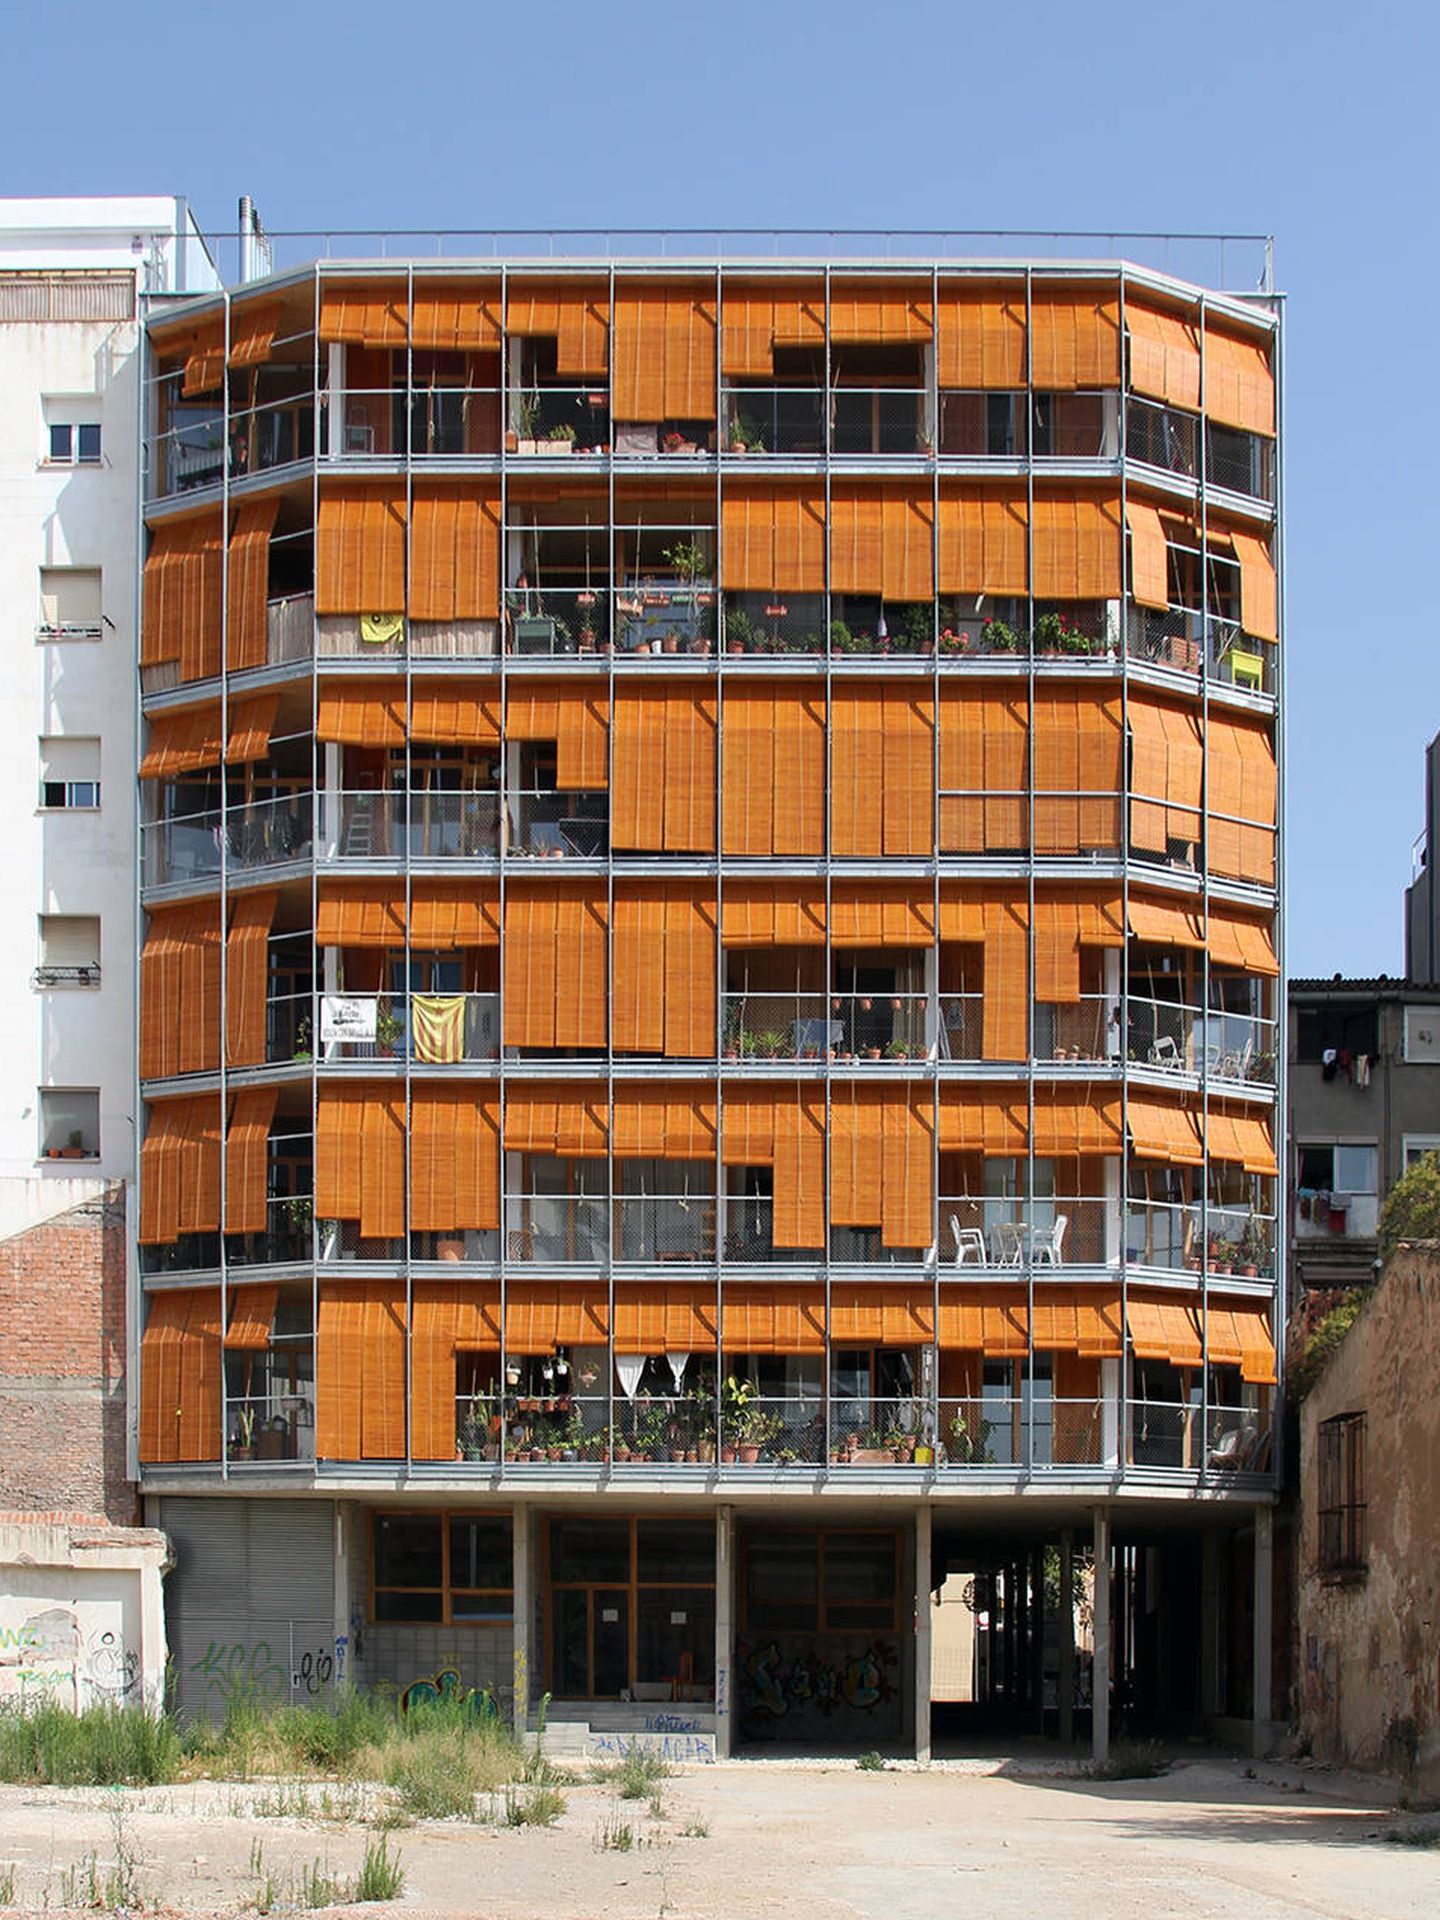 El edificio La Borda, en Can Batllò, Barcelona. (Lacol)